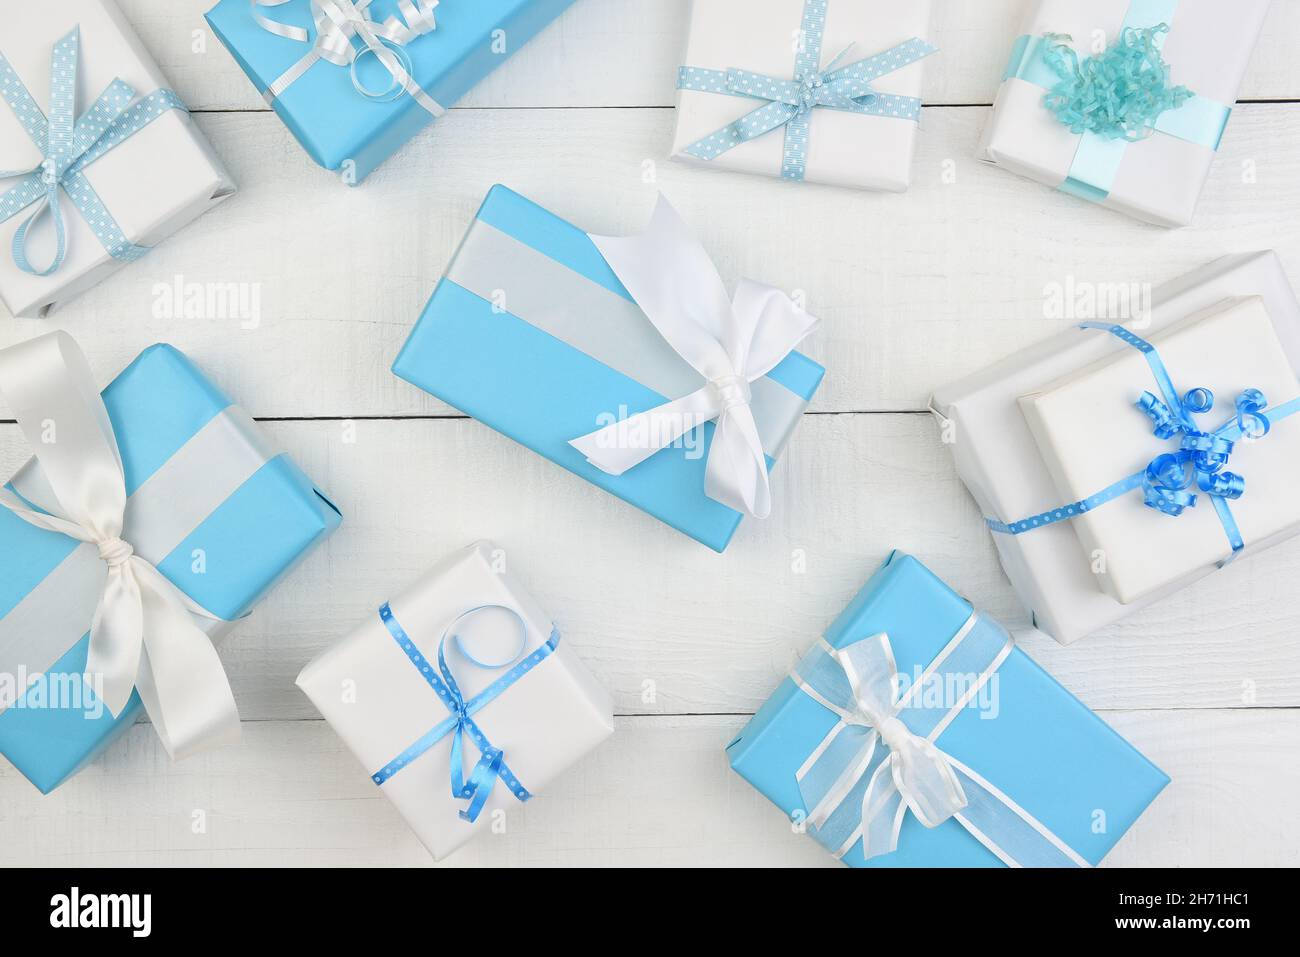 Décoration de Noël - des cadeaux de Noël enveloppés de bleu et de blanc remplissent le cadre.Les cadeaux sont un assortiment de tailles et de formes. Banque D'Images